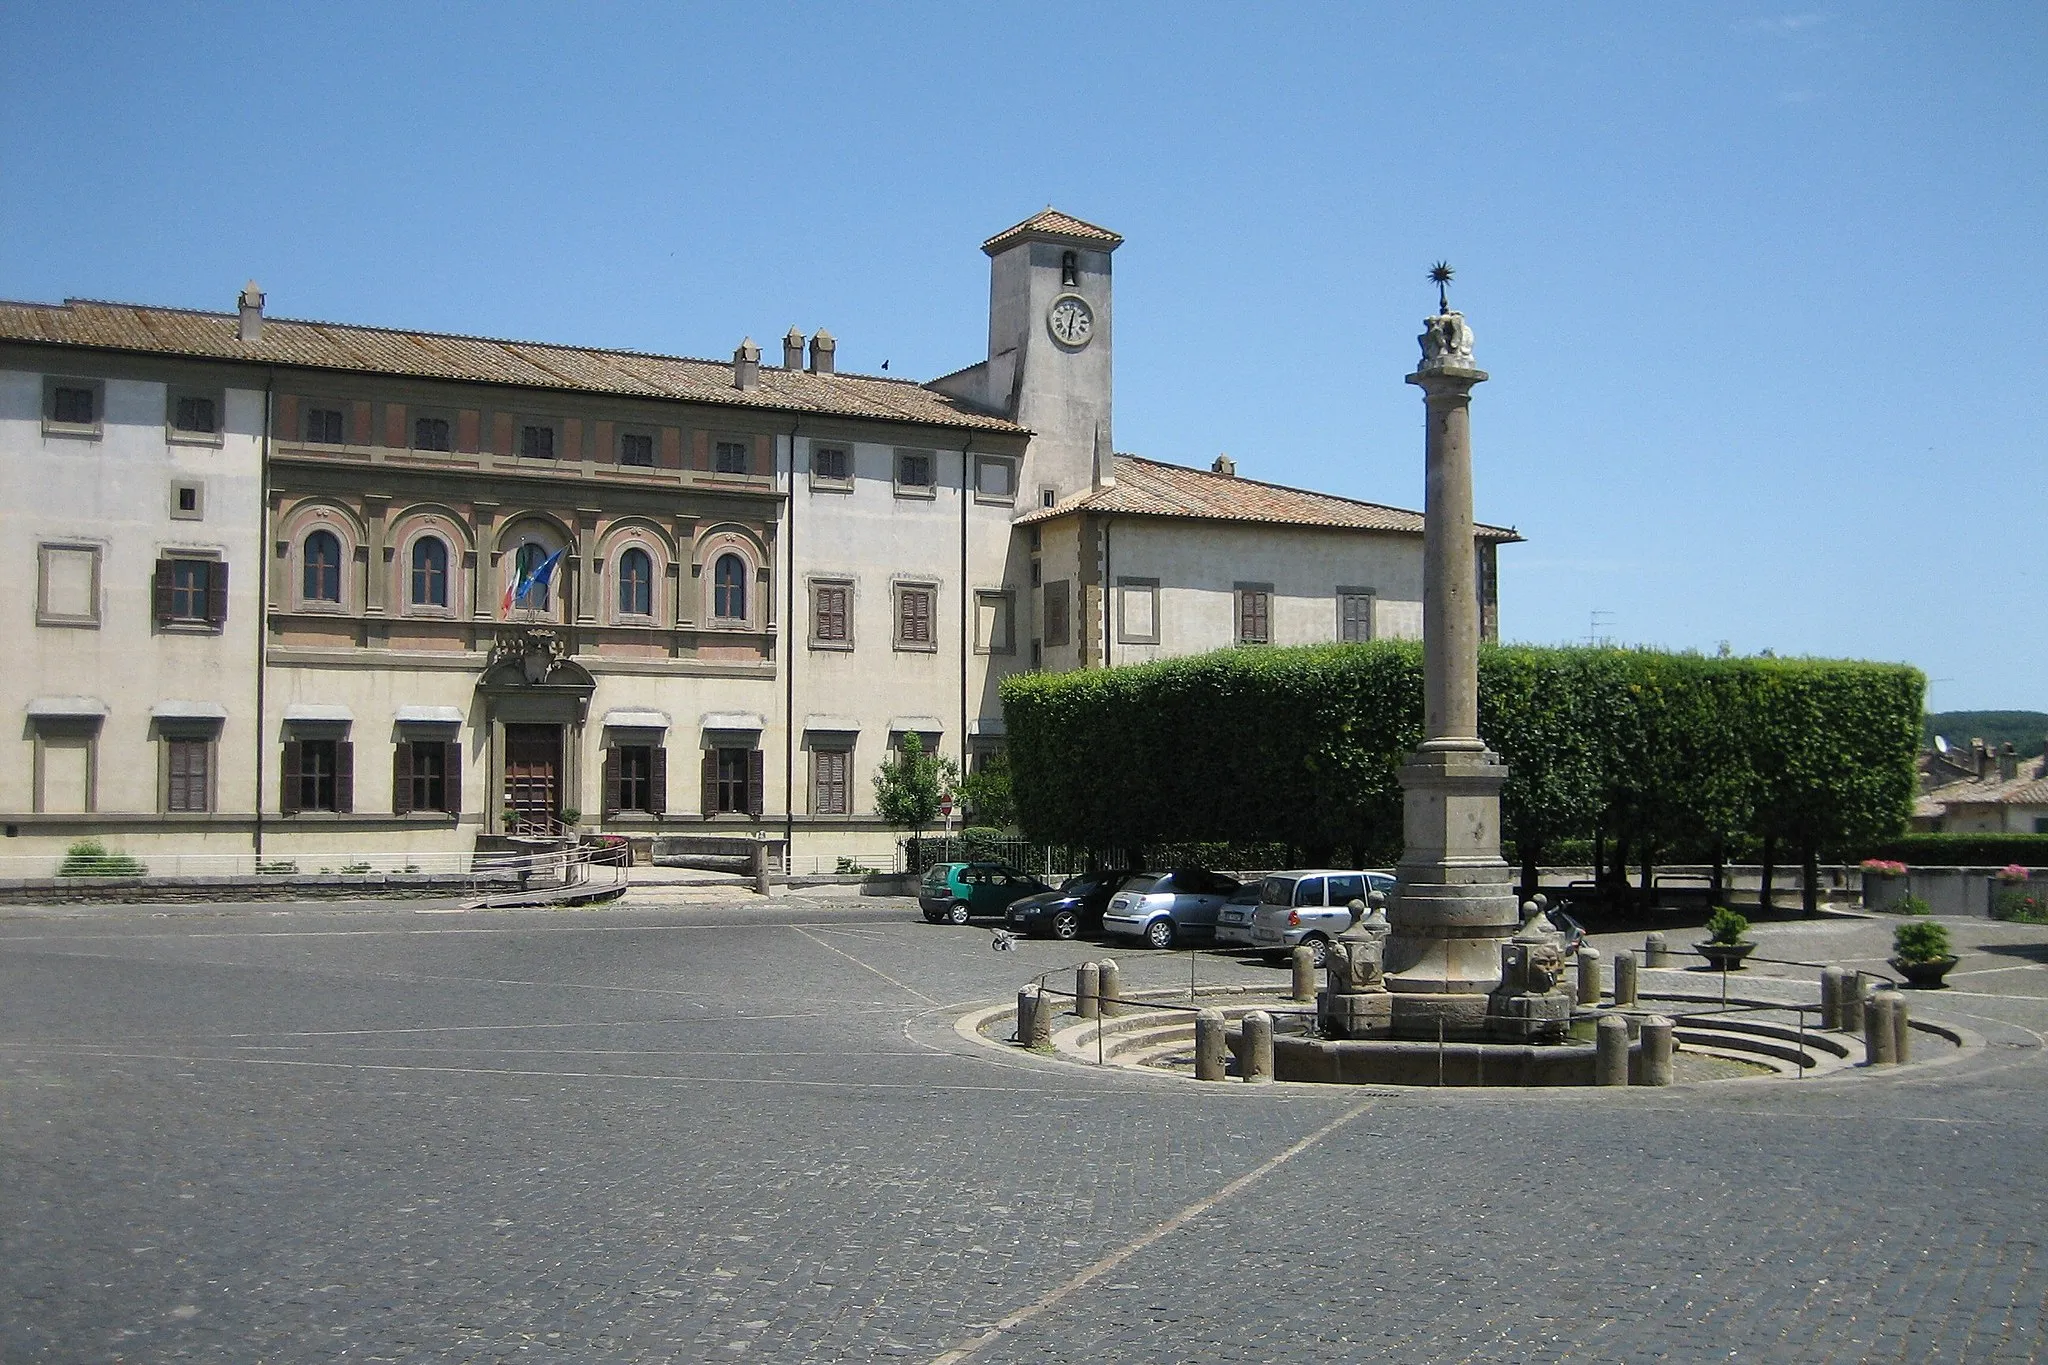 Photo showing: "Piazza Umberto I" with the "Palazzo Altieri" and the Fountain "Fontana delle Picche" in Oriolo Romano, Provincia di Viterbo, Italy